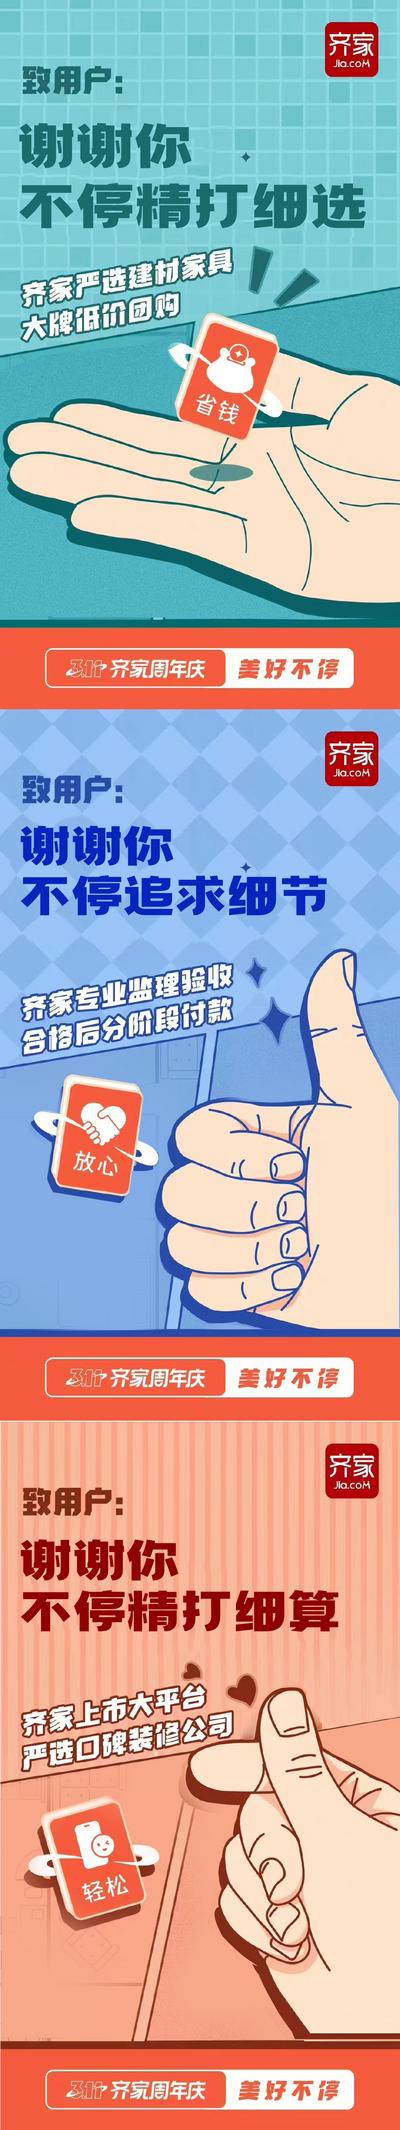 【南门网】海报 装修 家居 促销 优惠 省钱 手势 比心 系列